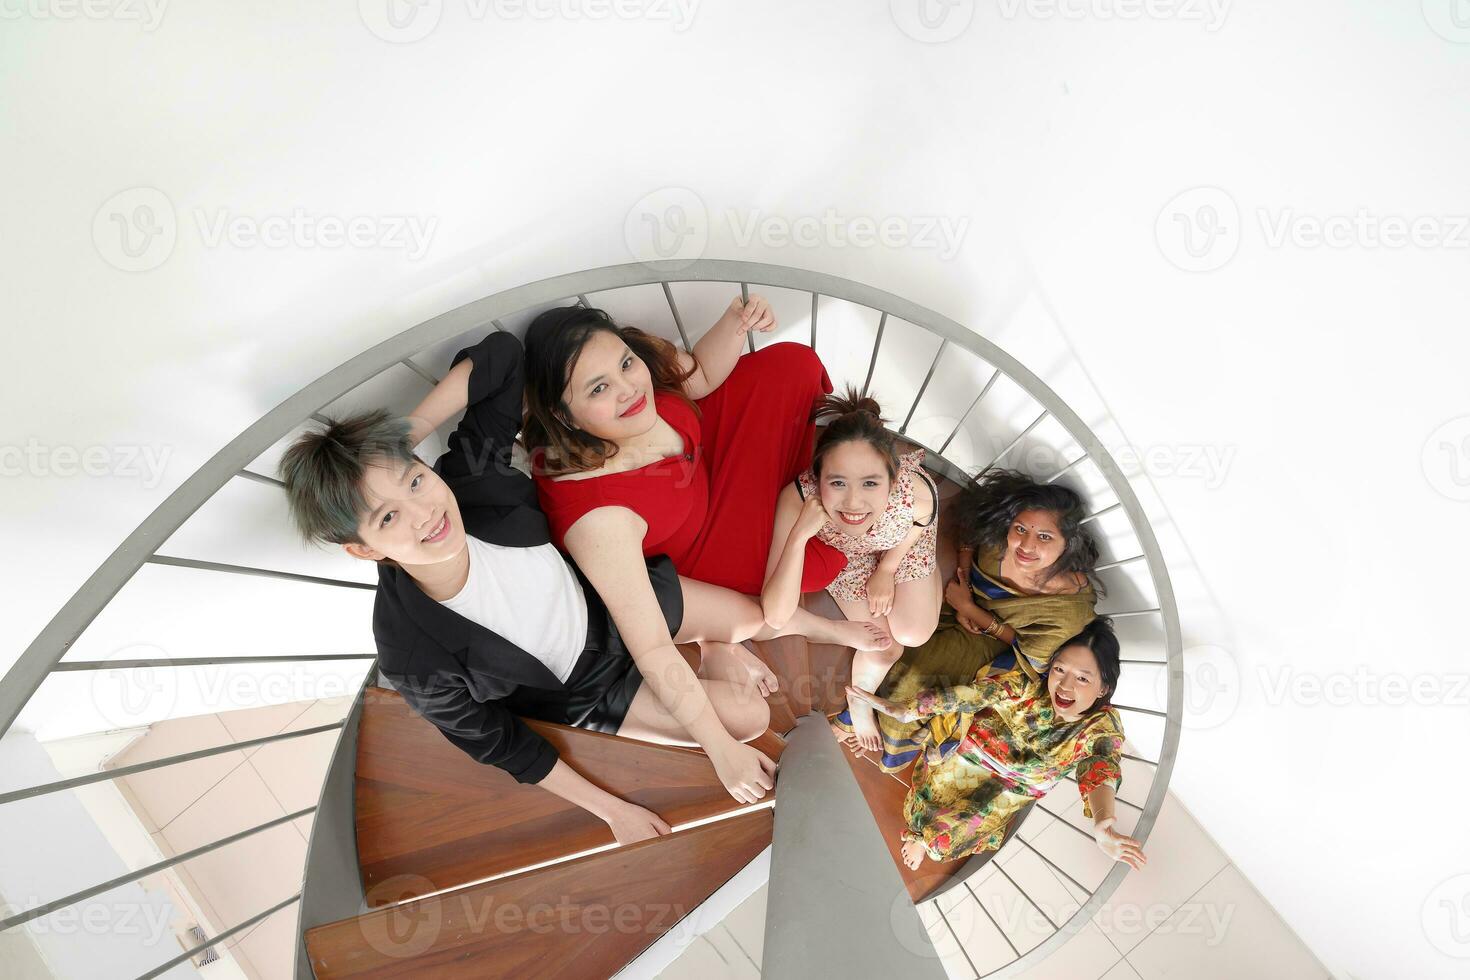 Jeune sud-est asiatique femme groupe séance sur intérieur spirale escalier content prendre plaisir amusement Regardez amusement Haut vue photo